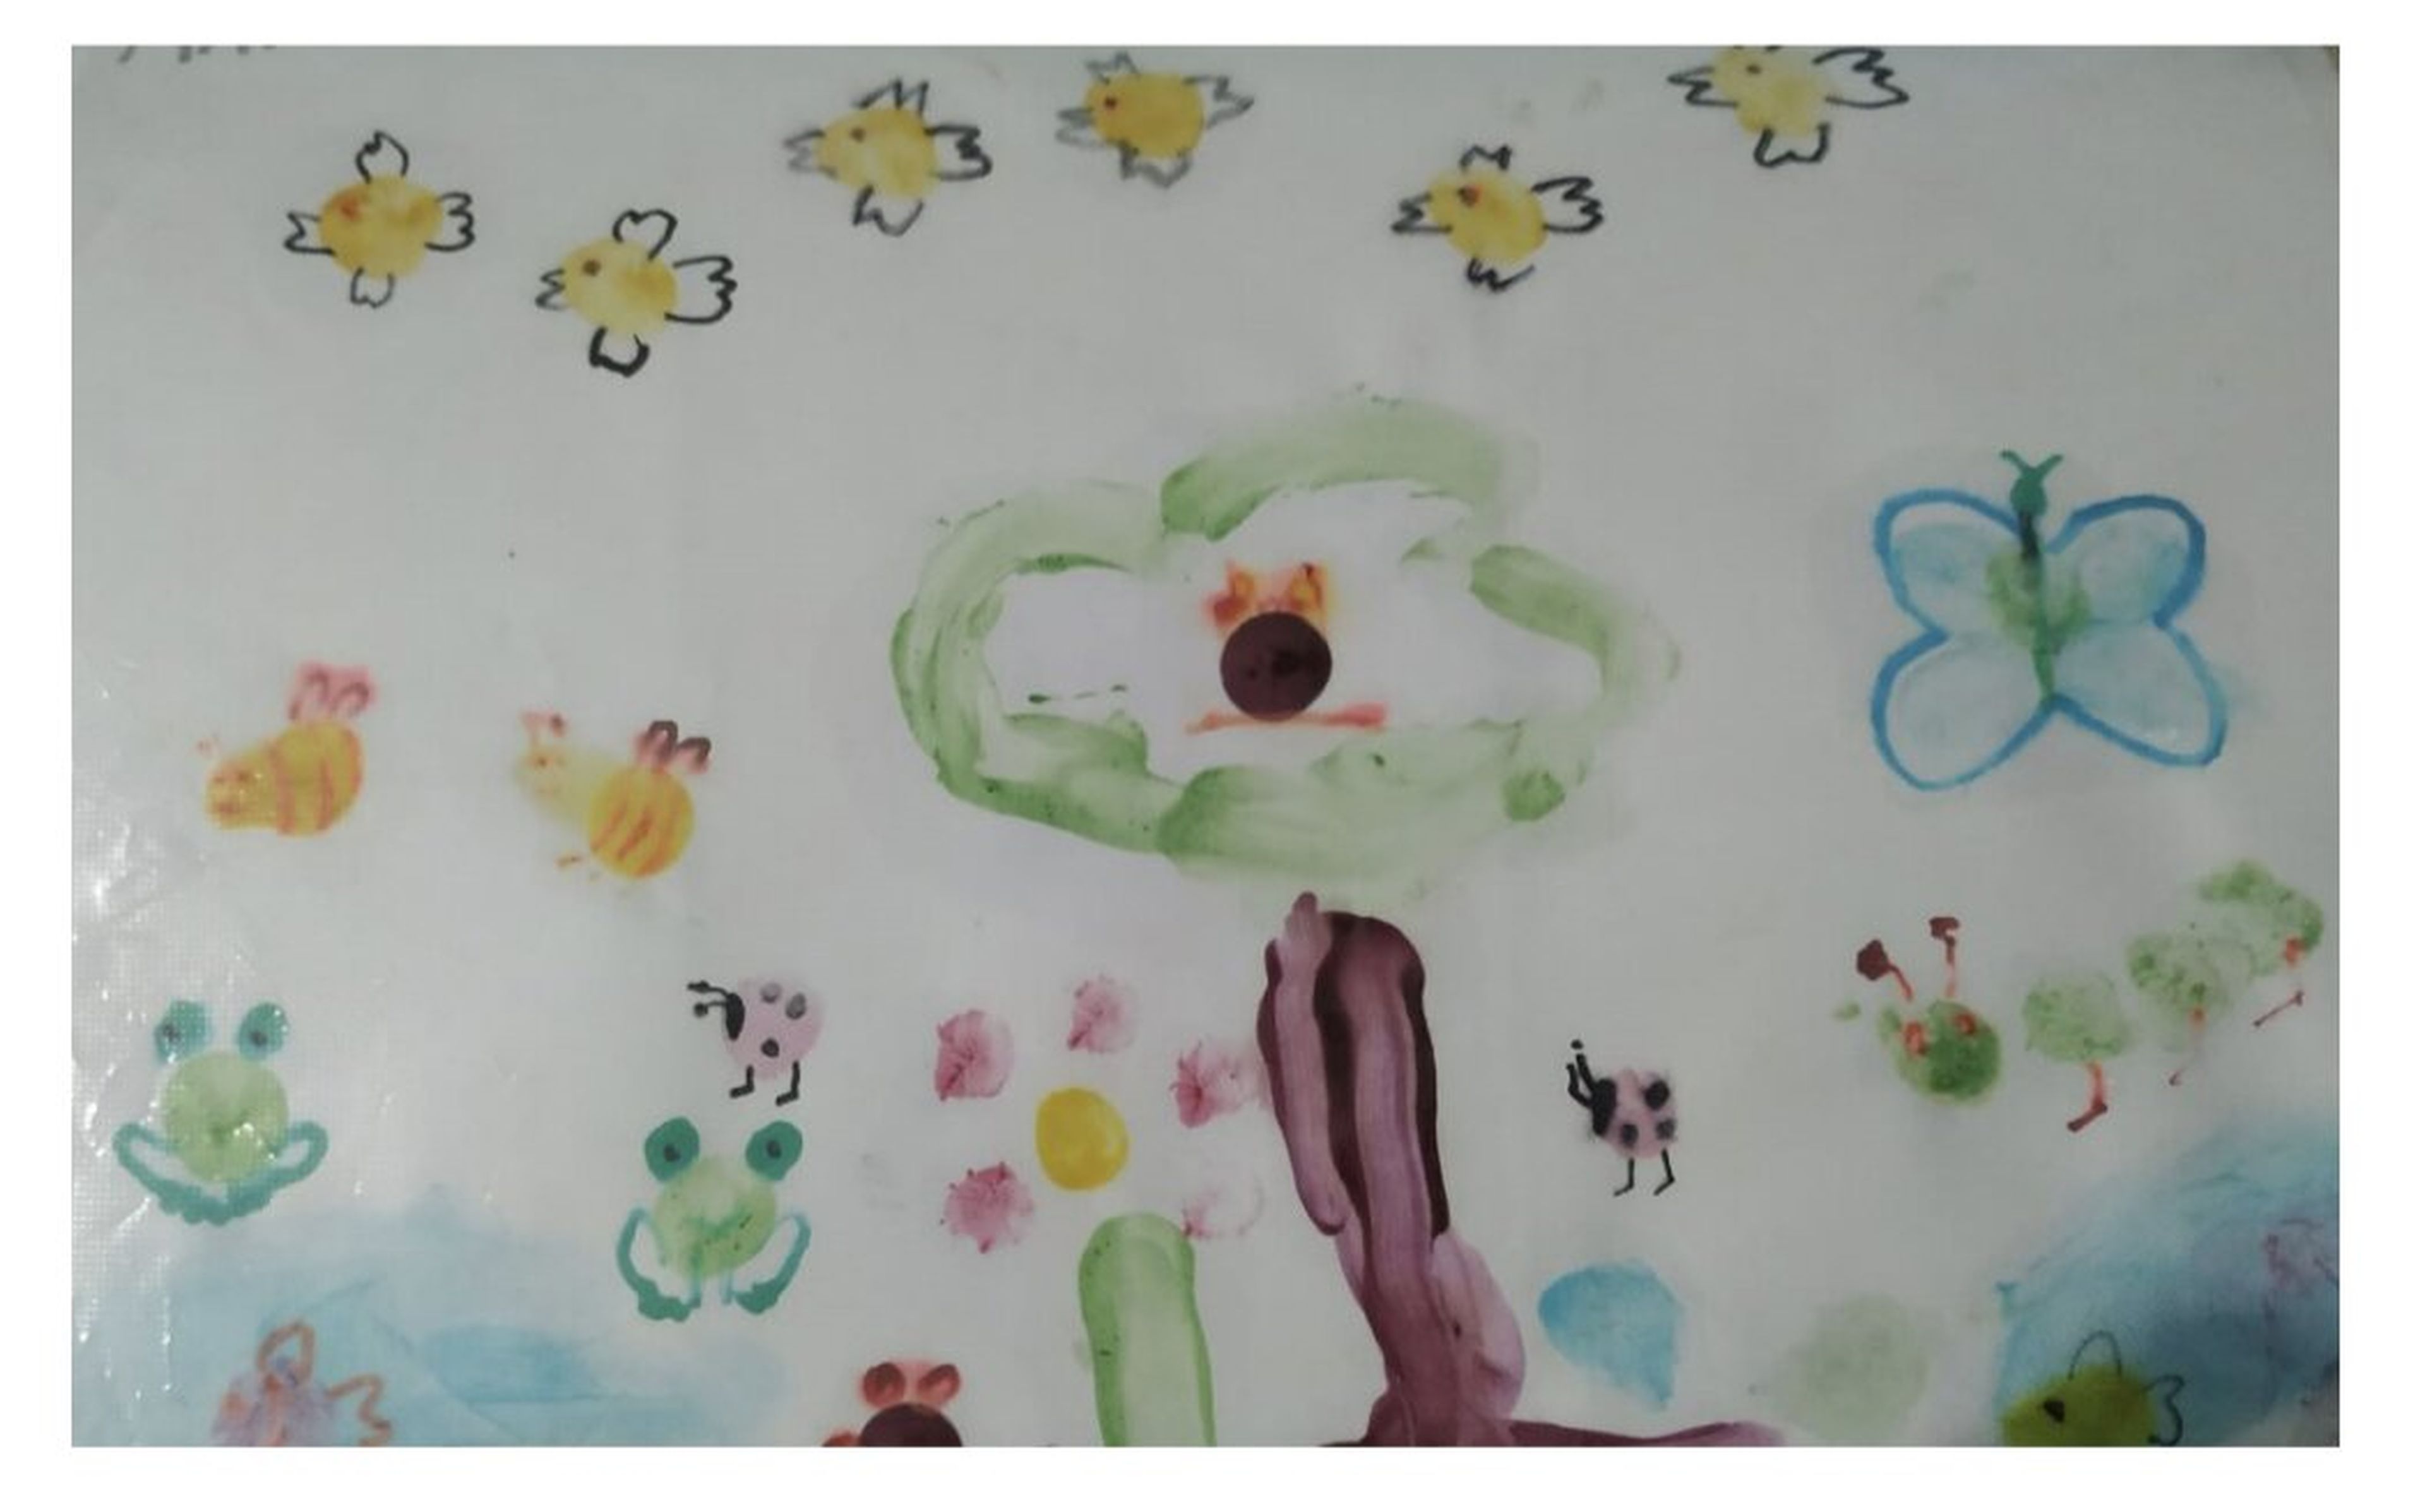 Dibujo de Mario, 4 años. "Aparecen varios elementos como mariposas y pájaros que hablan de la necesidad de imaginar y fantasear".